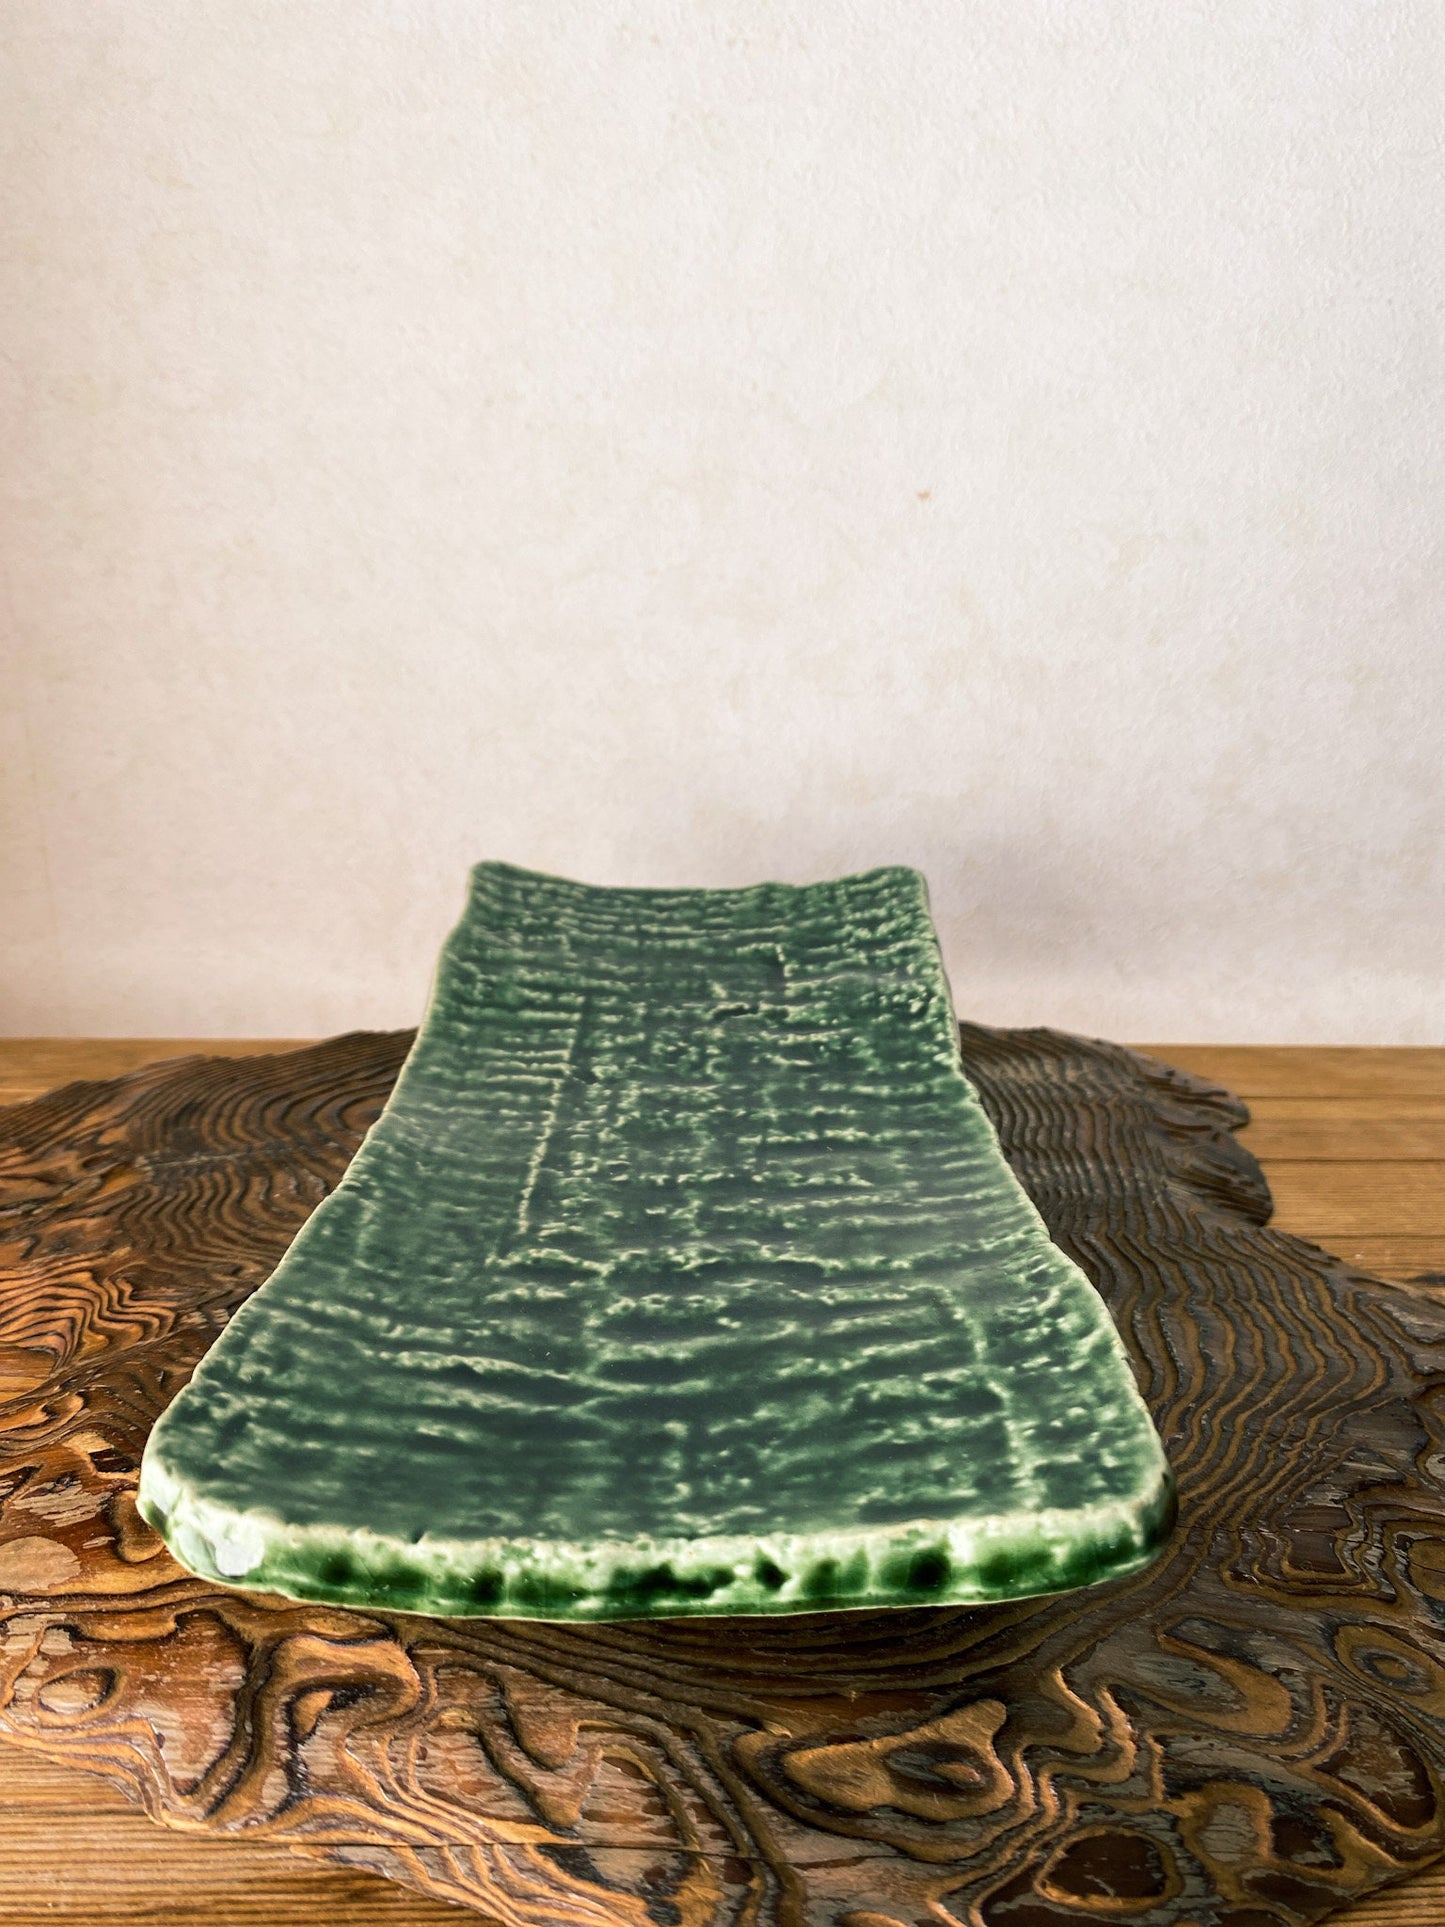 美濃焼 Minoyaki, Japanese Ceramic Saucer with leg,  Size 9.84" x 4.72" x 1.57" height, beautiful green grazed with jomon monyou design.